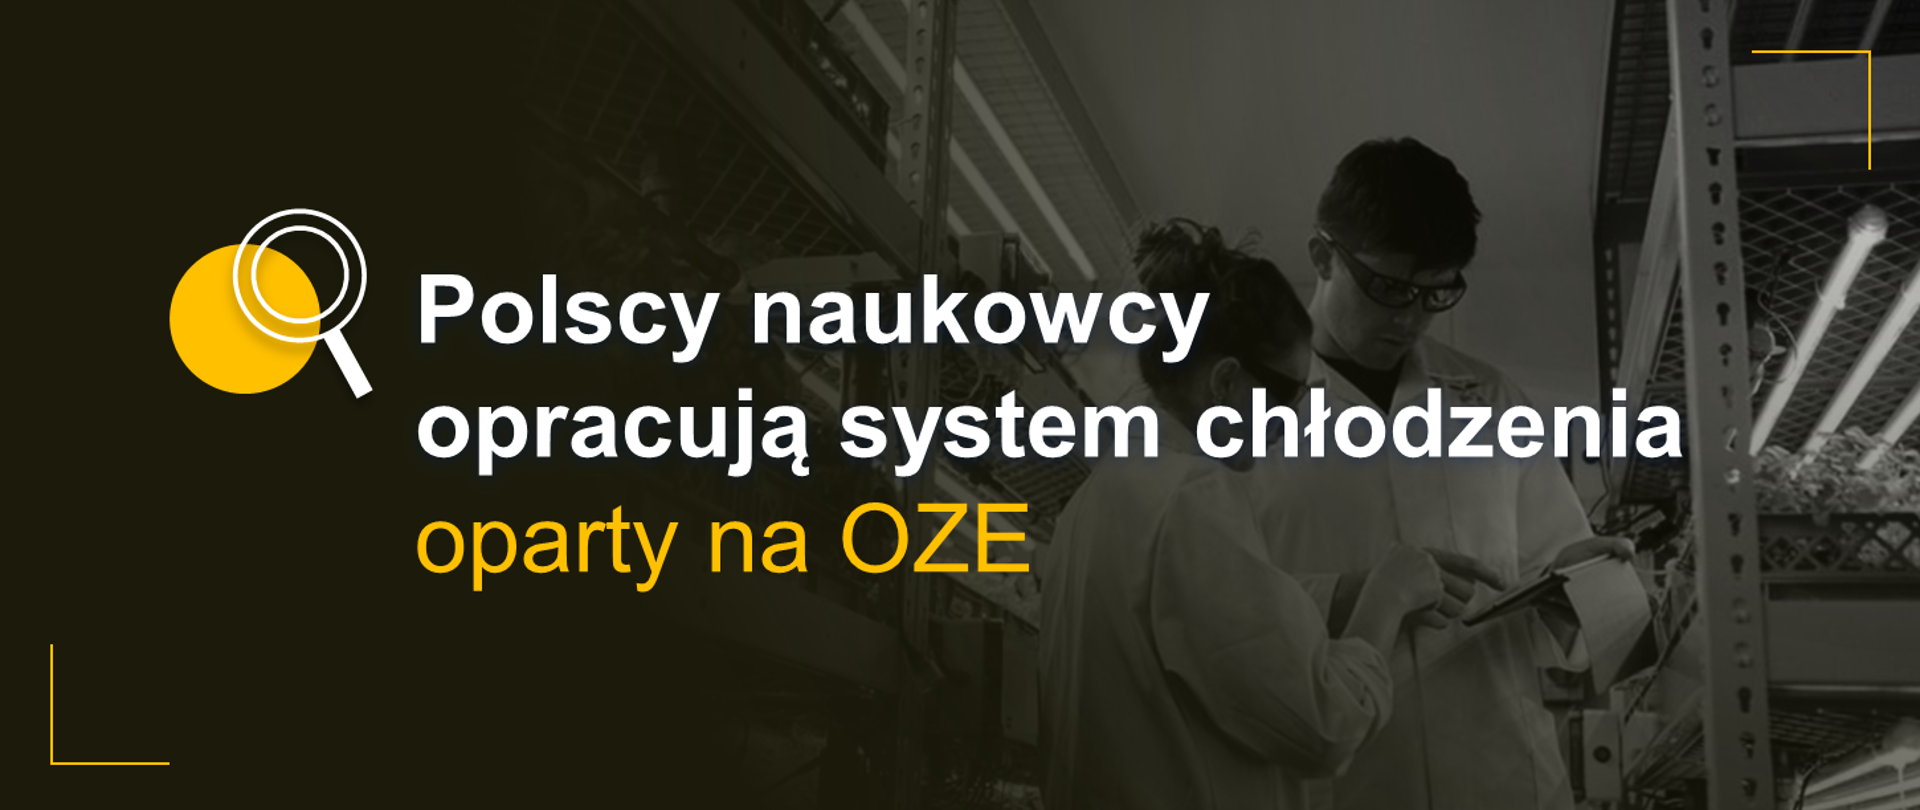 Grafika z symbolem lupy, dwójką naukowców w tle i tekstem: "Polscy naukowcy opracują system chłodzenia oparty na OZE"